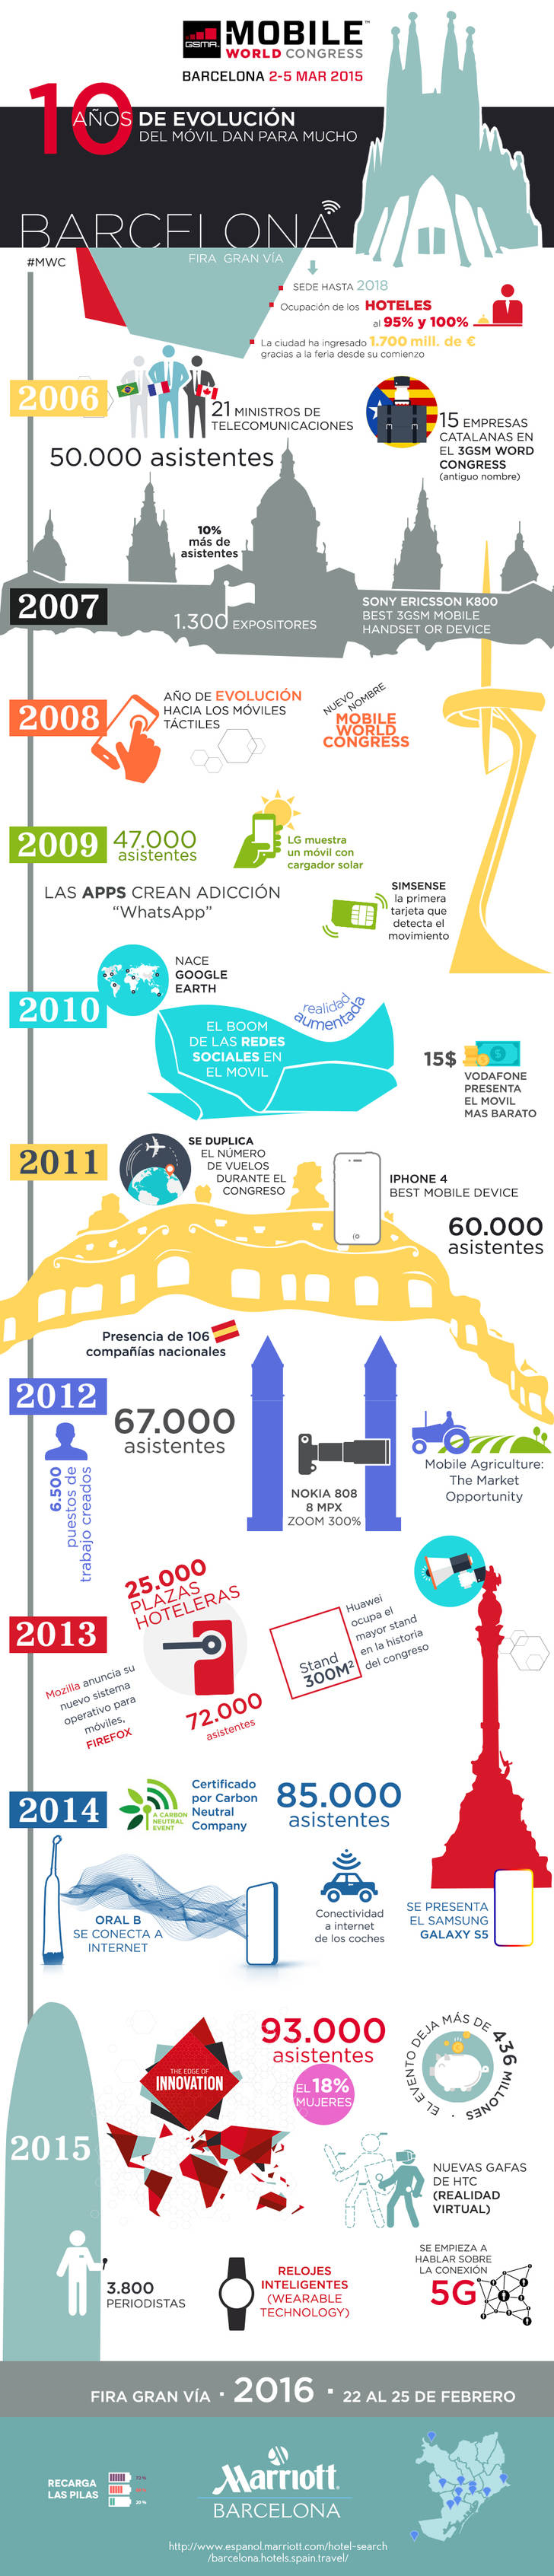 Infografía: Mobile World Congress en cifras